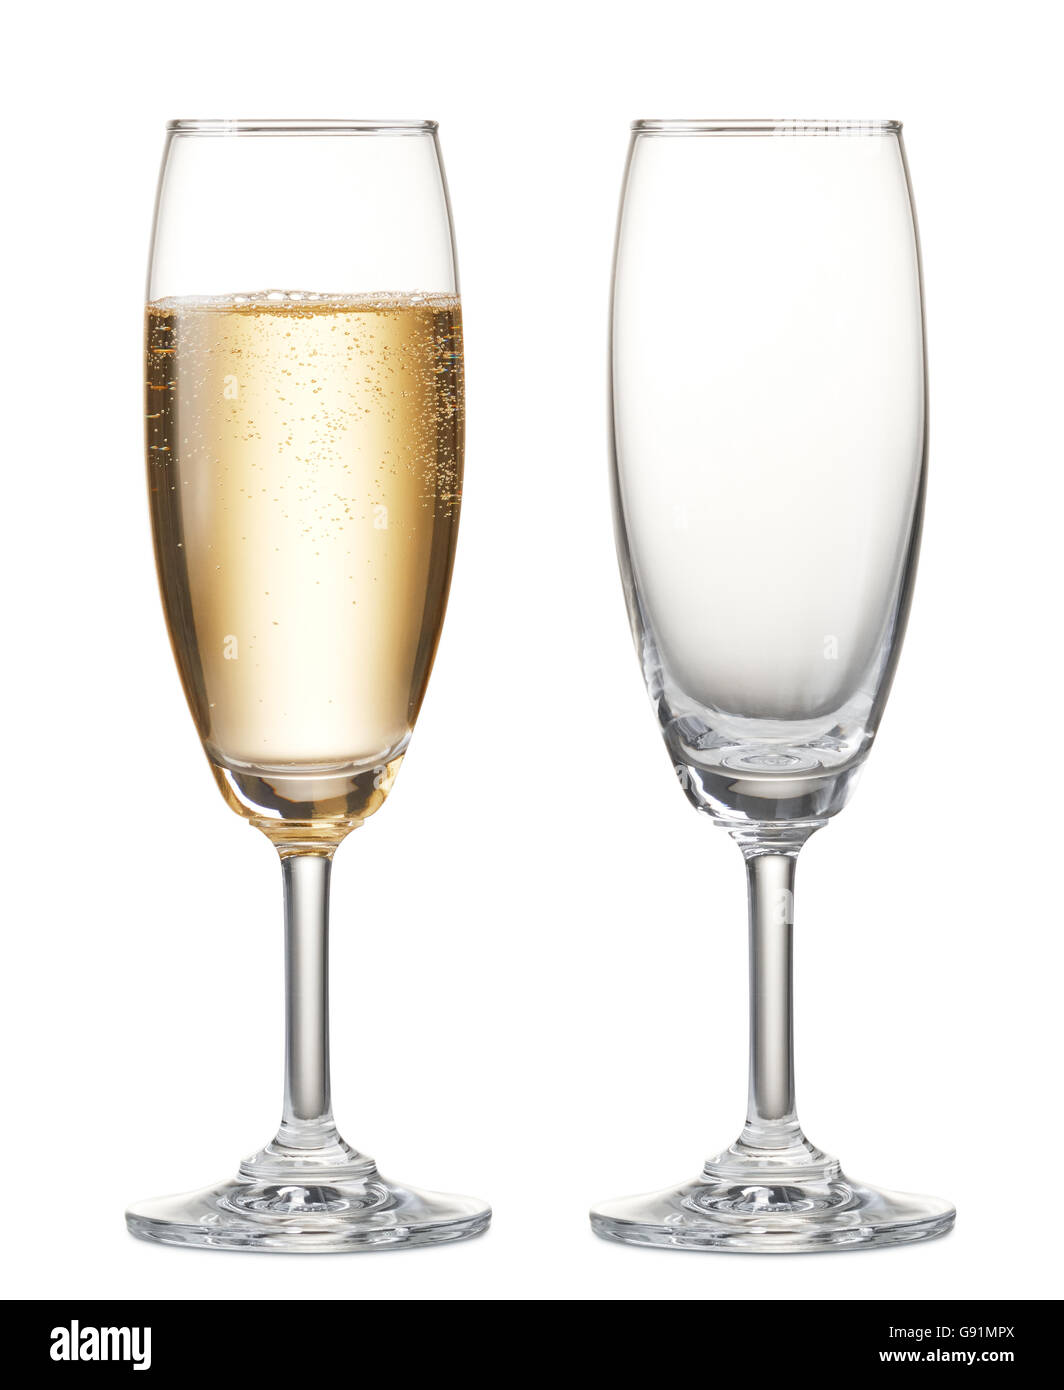 Copa de Champagne y champagne vacía Foto de stock